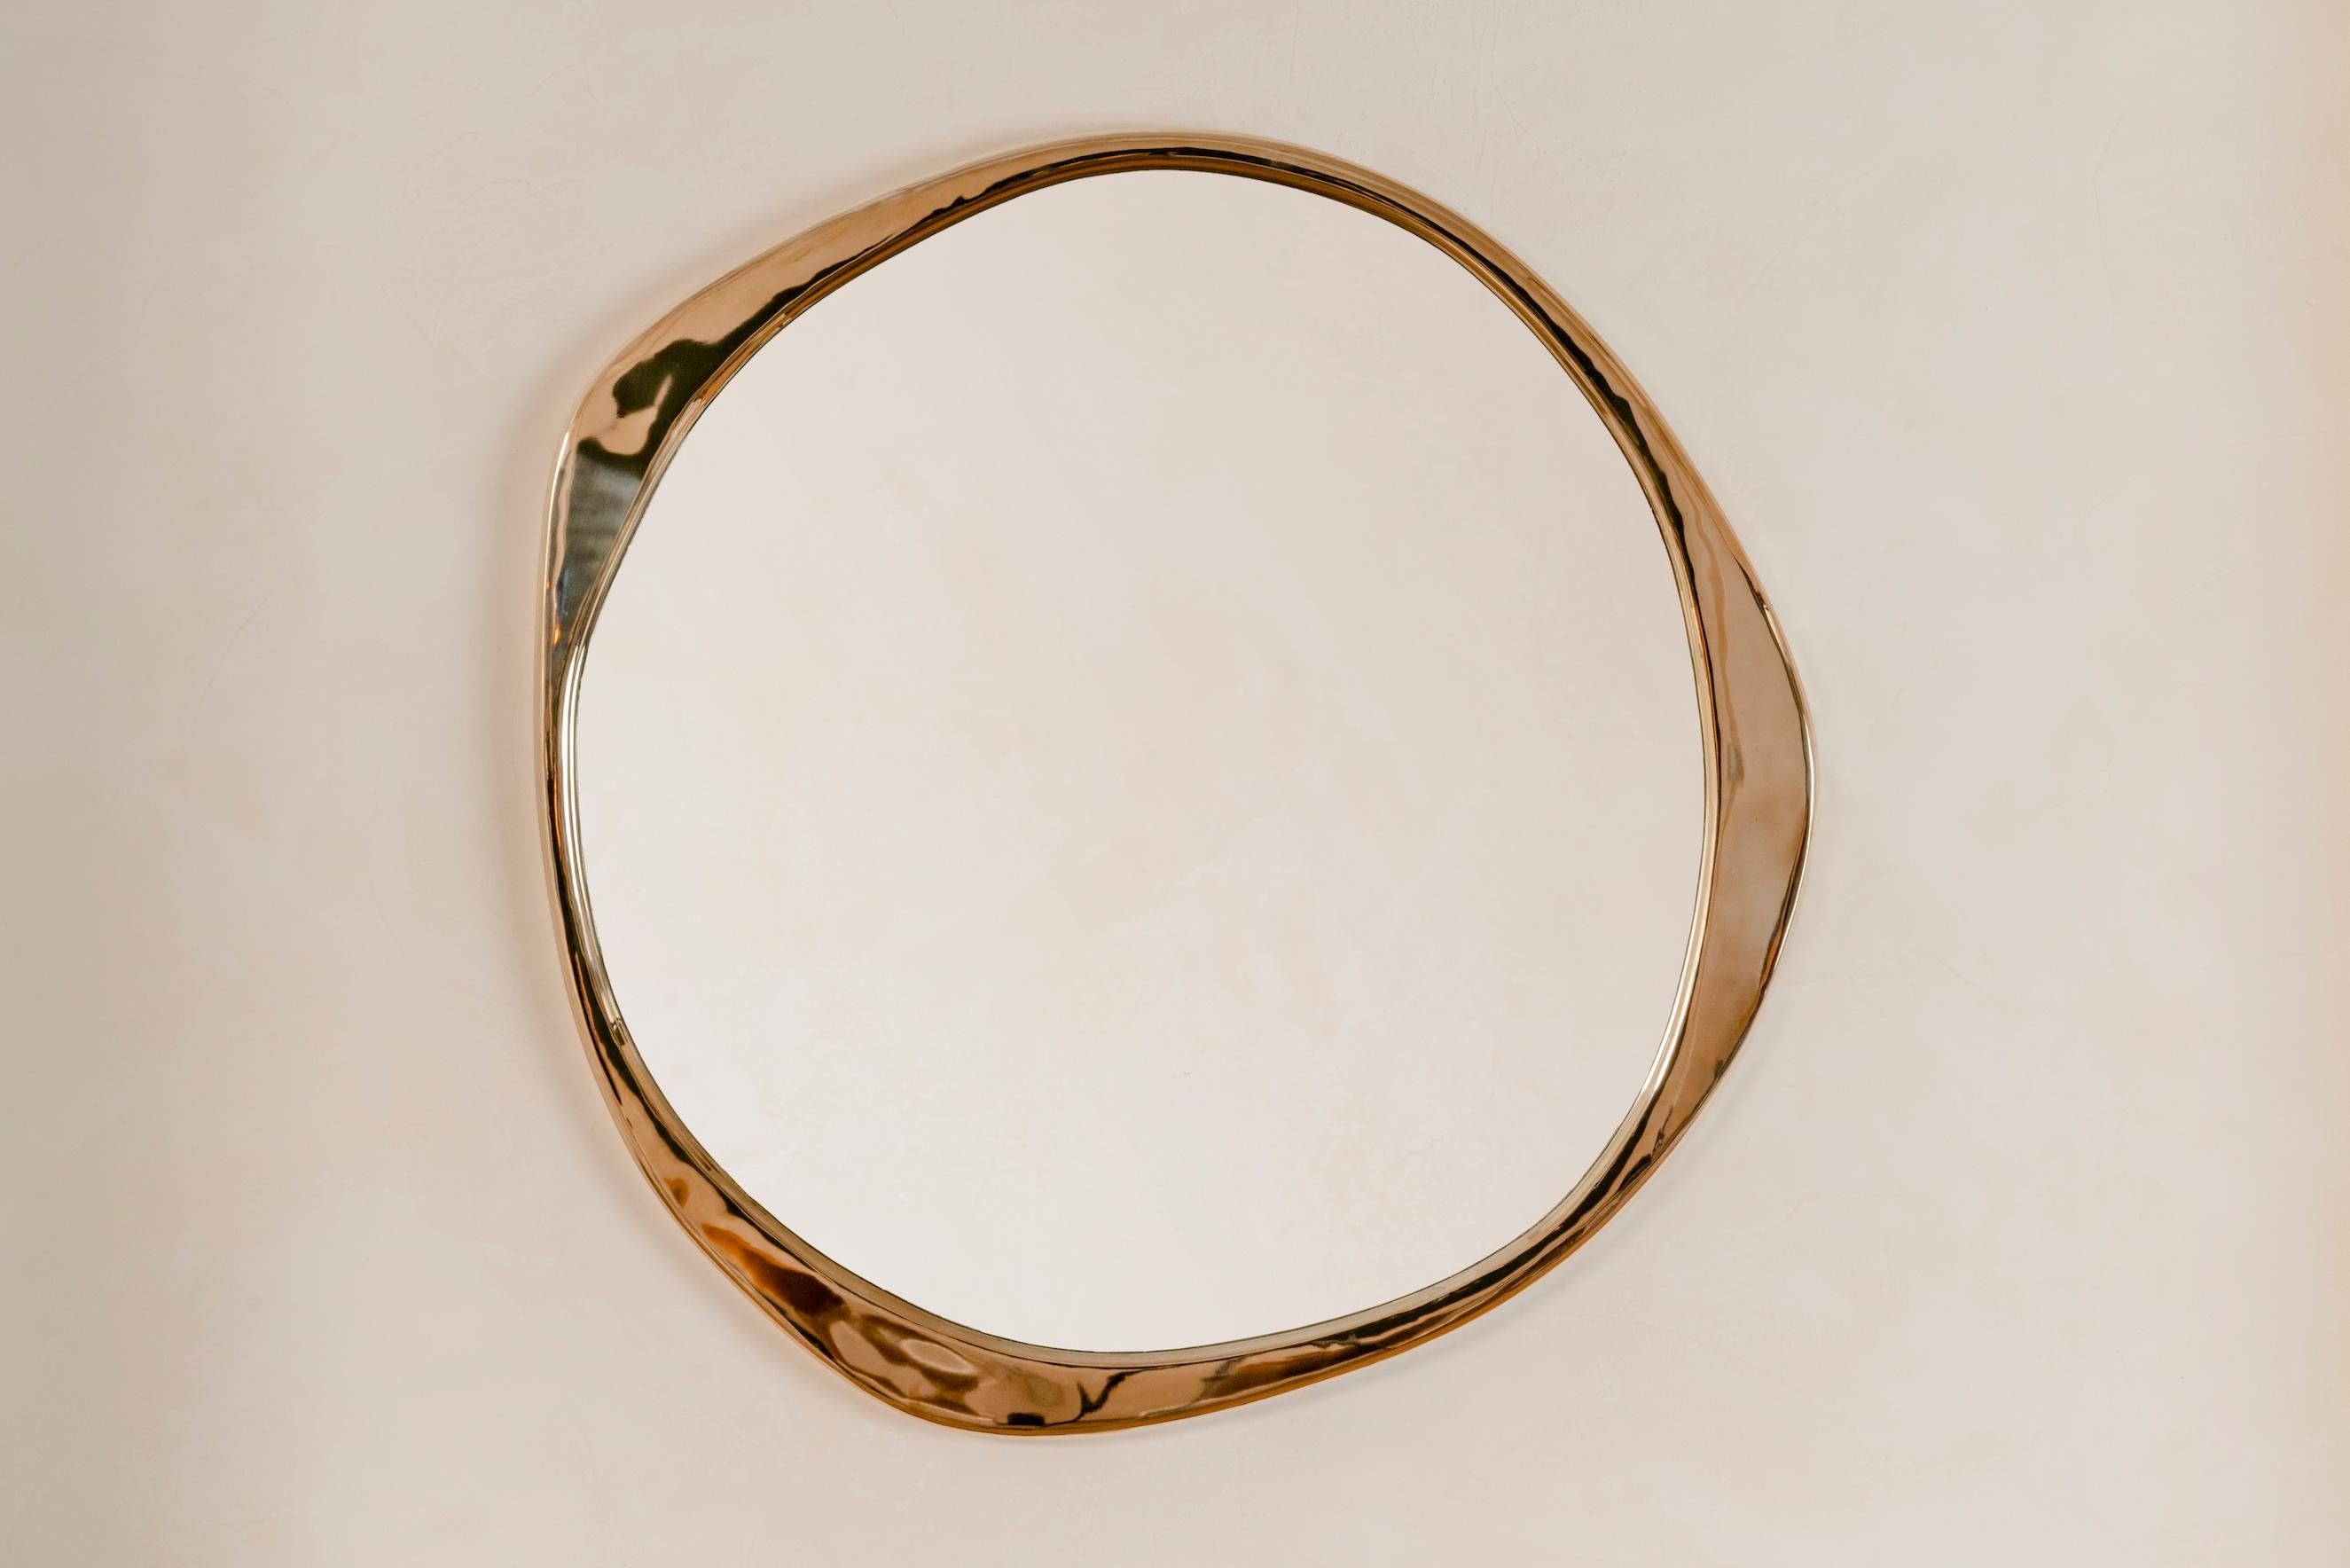 Le sculptural miroir A.Cepa en bronze poli est coulé en bronze dans une fonderie d'art en Pennsylvanie, et habilement poli à la main. De forme ondulée et irrégulière, le miroir A. Cepa est le point de mire de toute pièce grâce à sa forme organique